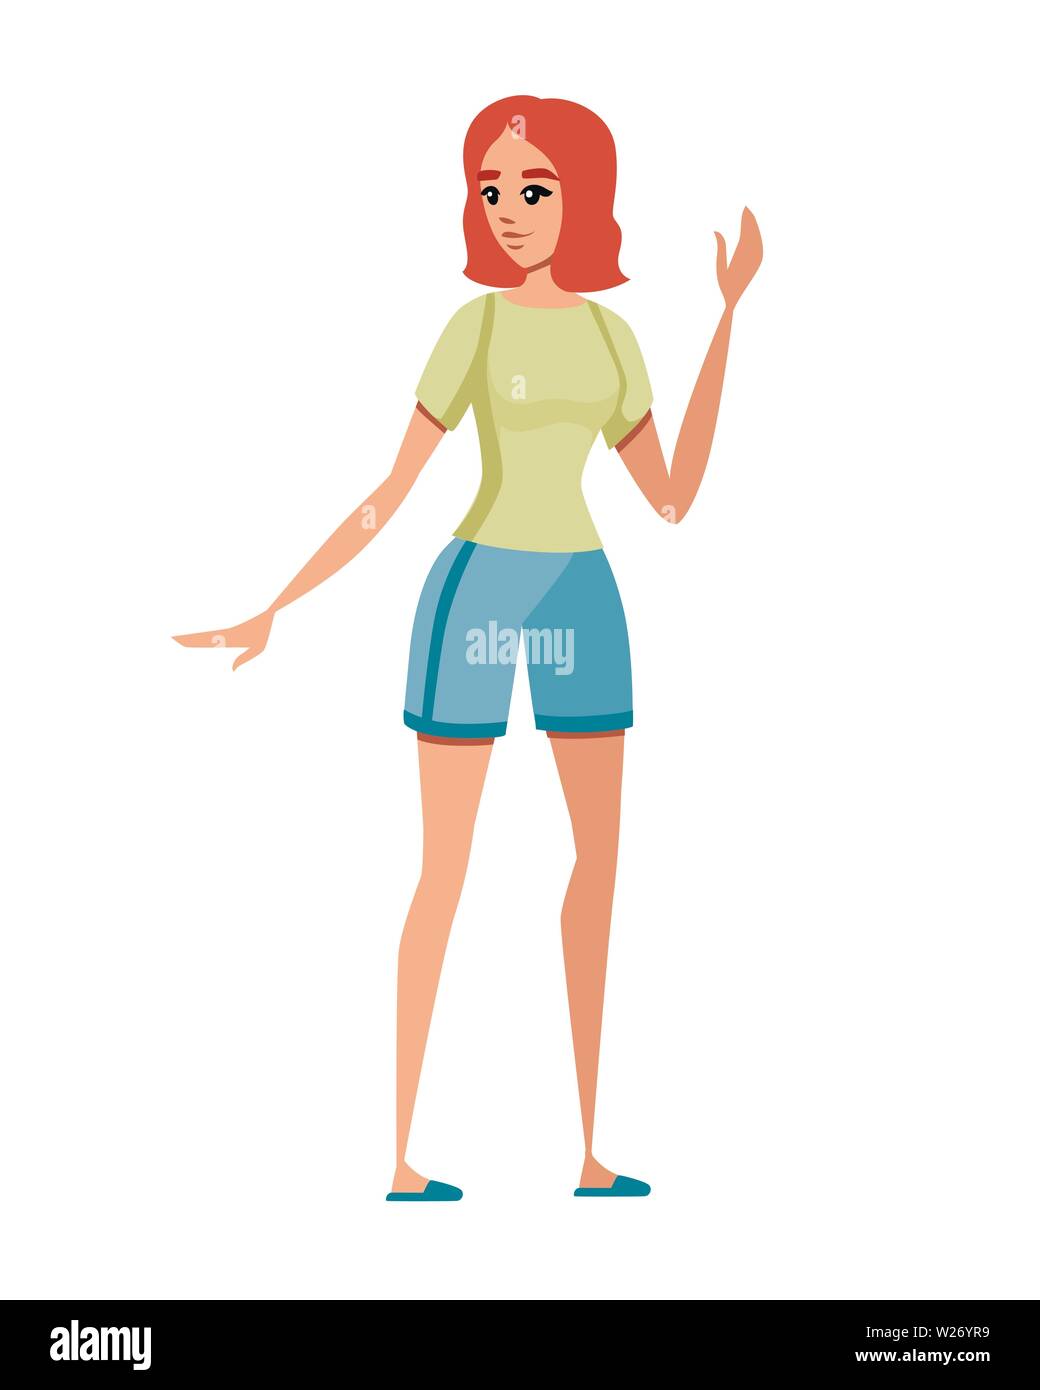 Glückliche Frau in Freizeitkleidung mit auferweckt arm Cartoon Character Design flachbild Vector Illustration auf weißem Hintergrund. Stock Vektor